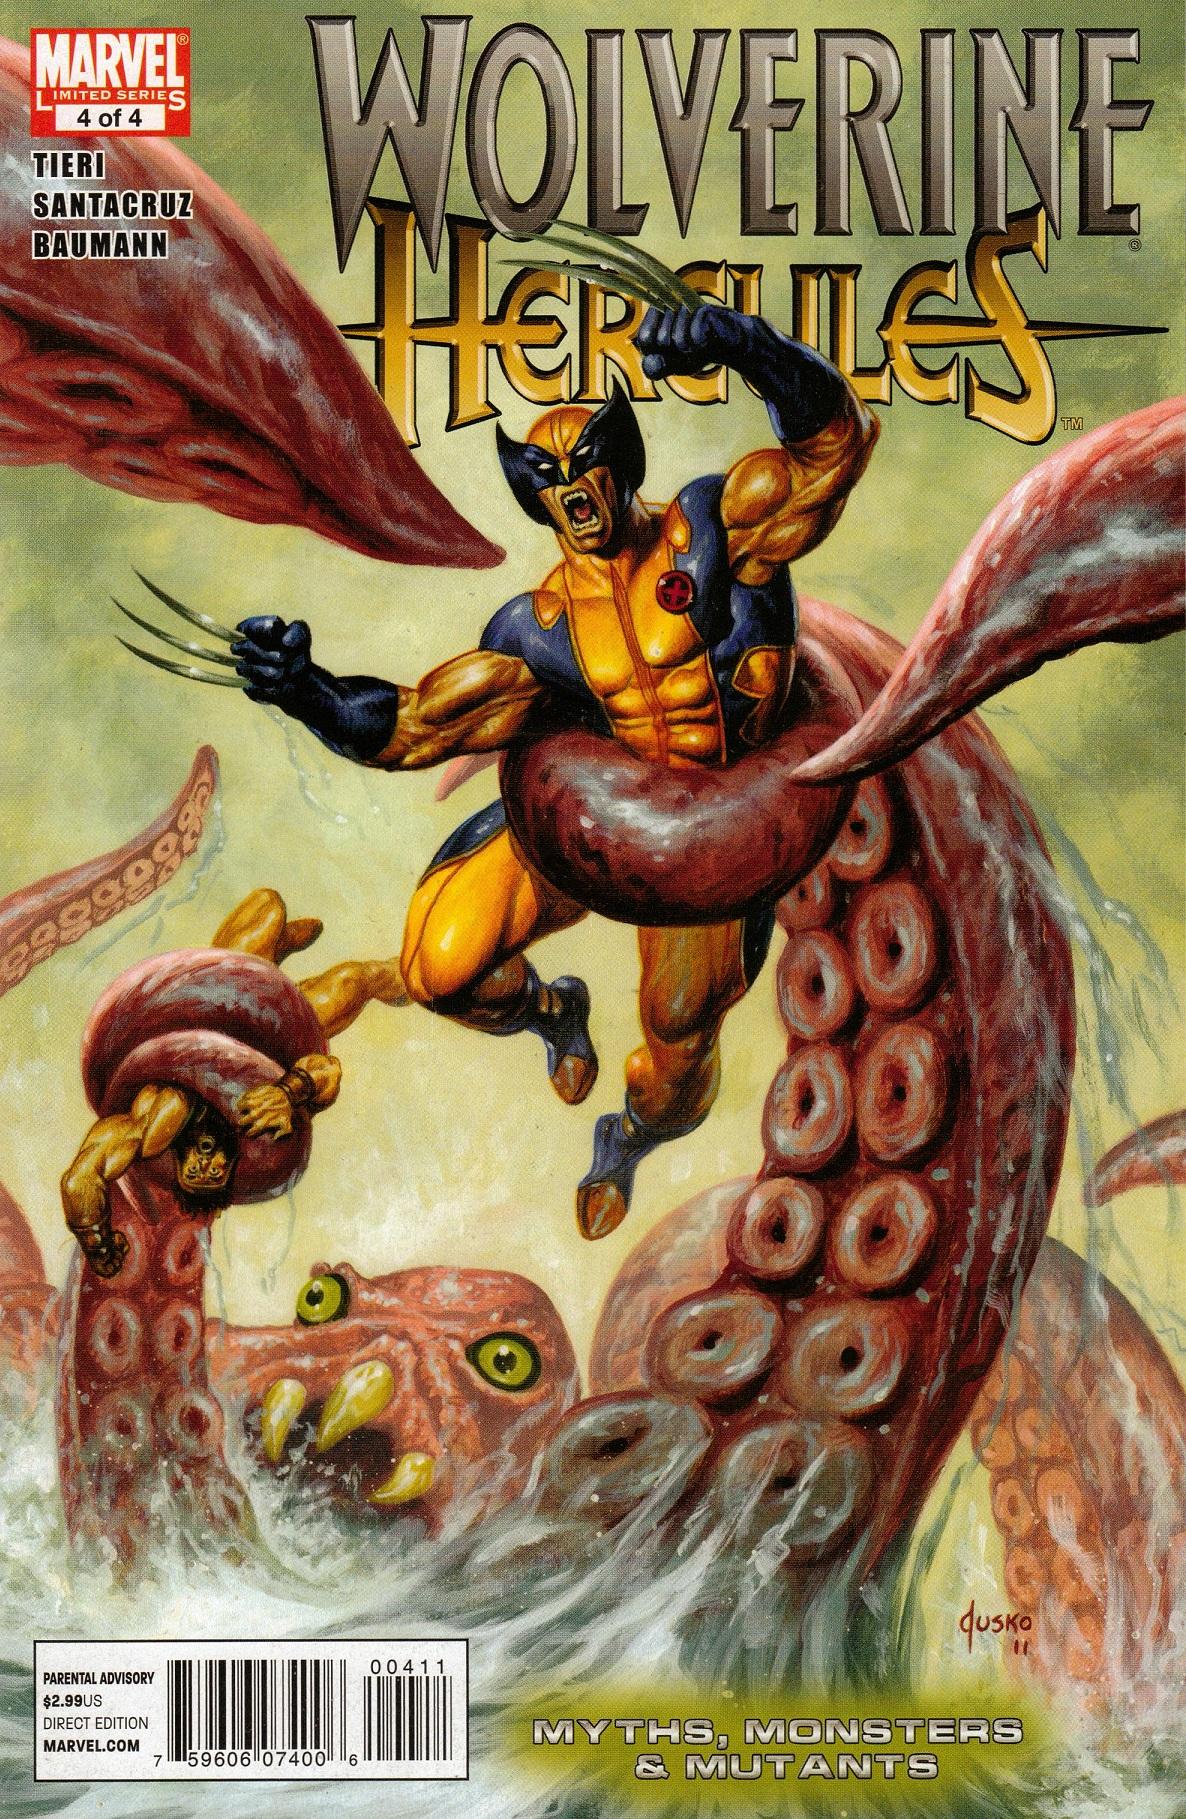 Wolverine/Hercules: Myths, Monsters & Mutants Vol. 1 #4